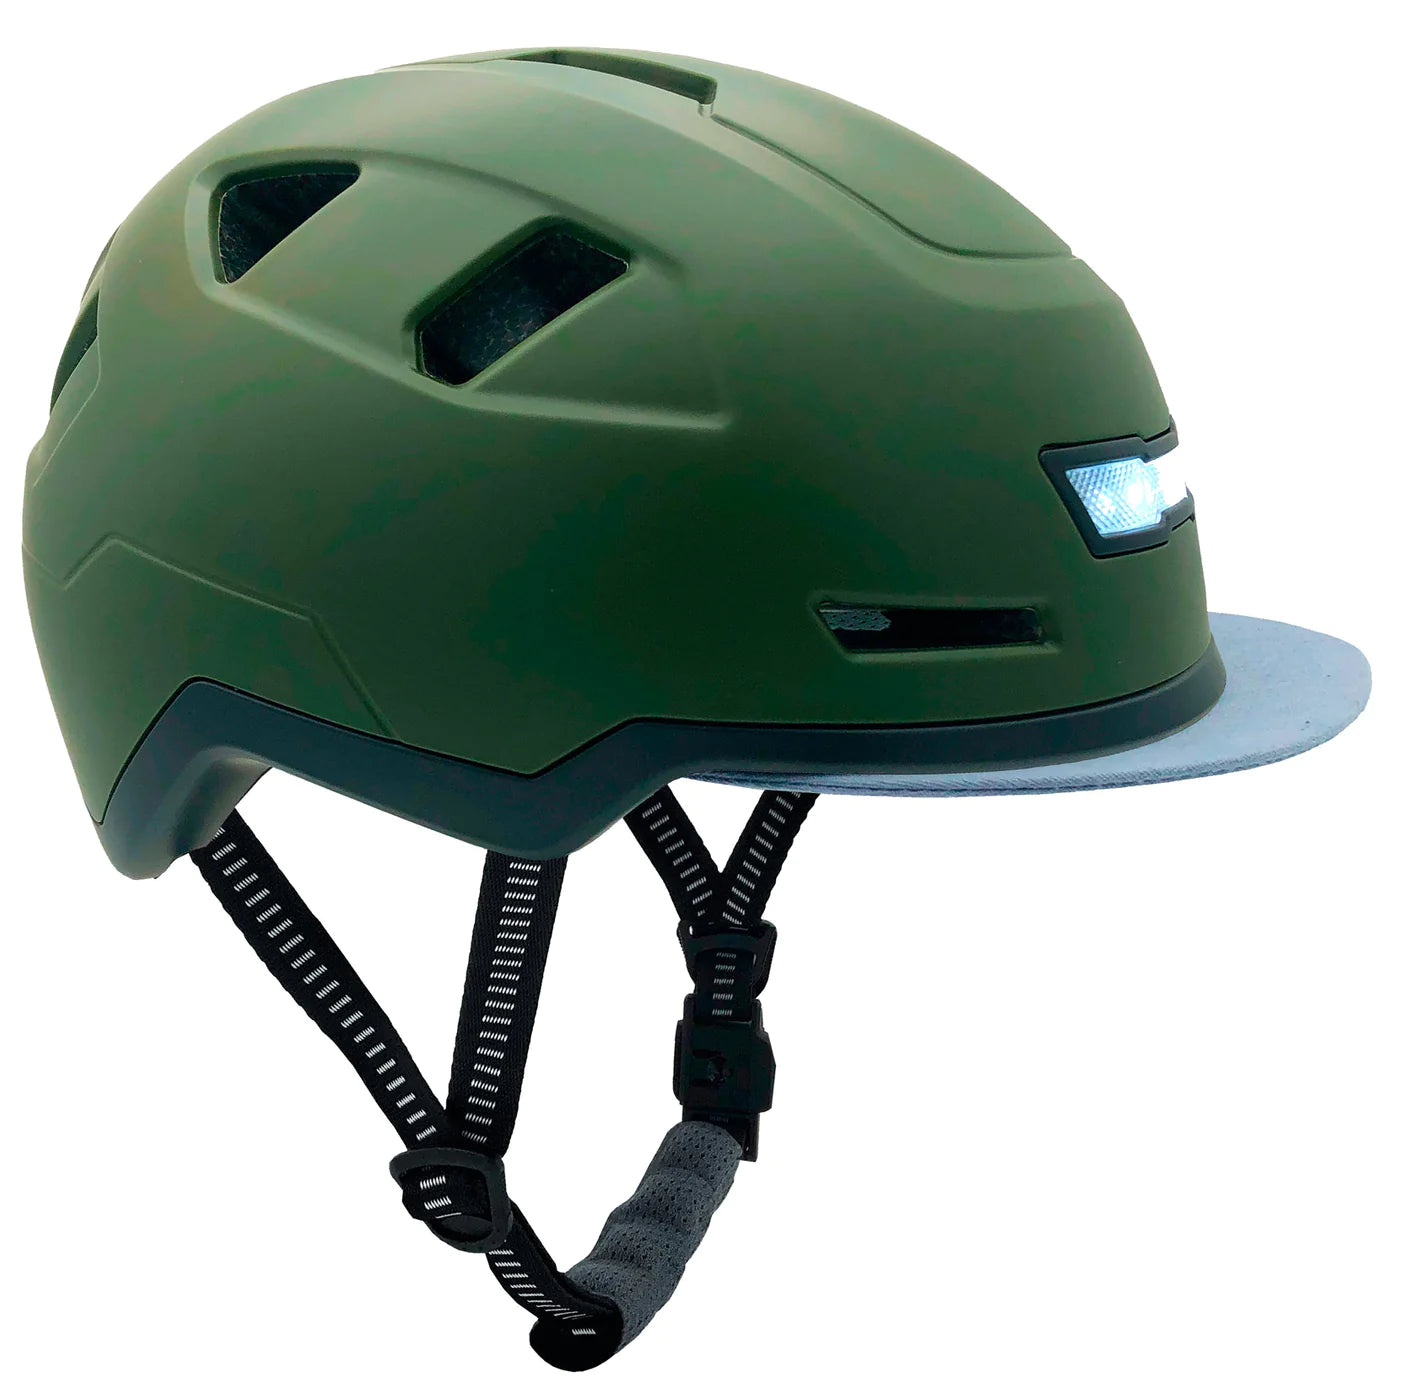 XNITO Helmet